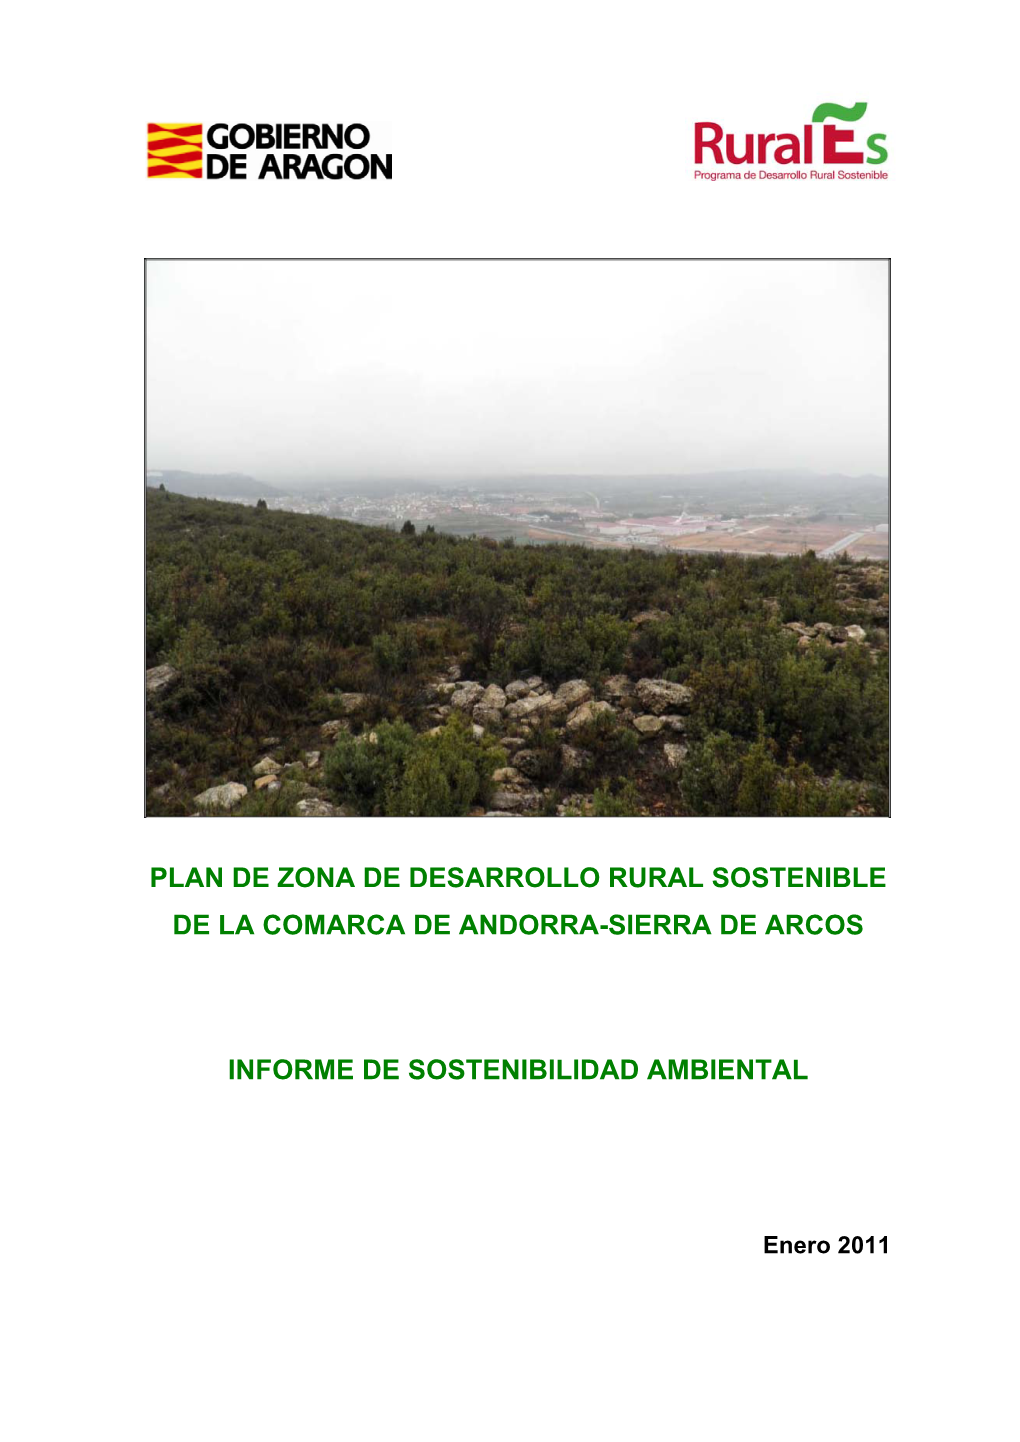 Plan De Zona De Desarrollo Rural Sostenible De La Comarca De Andorra-Sierra De Arcos